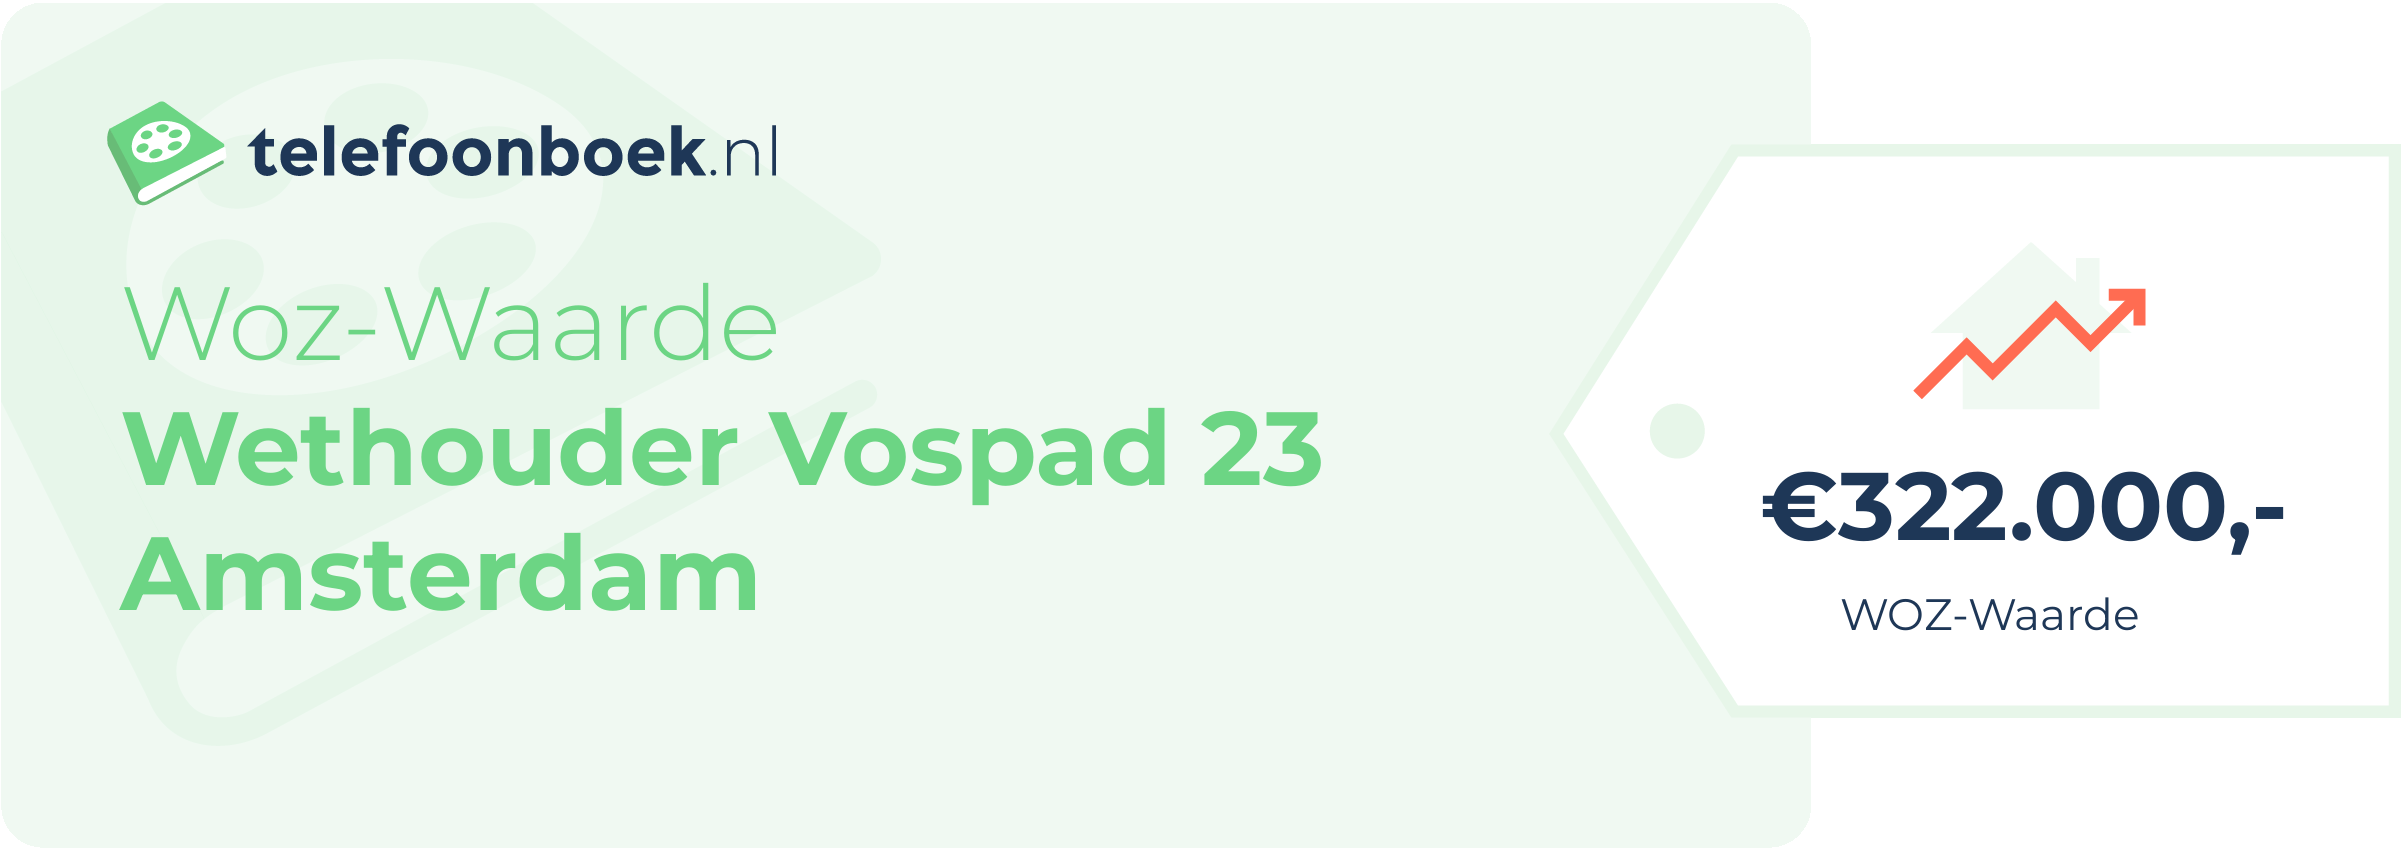 WOZ-waarde Wethouder Vospad 23 Amsterdam